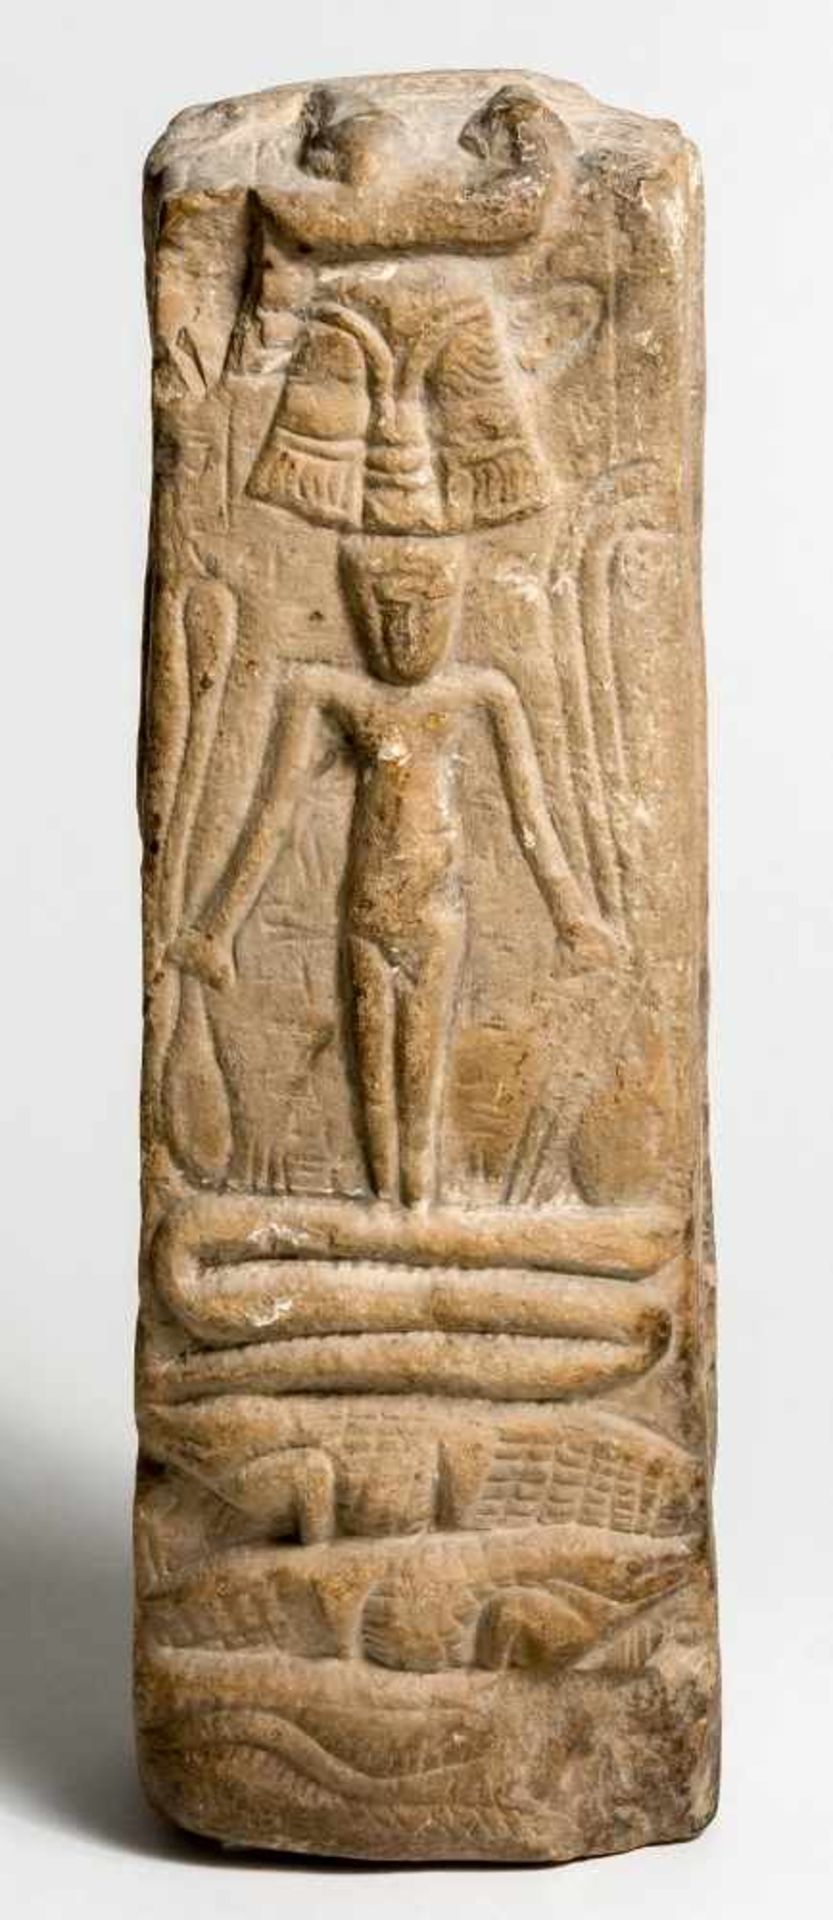 Magische Horus-SteleÄgypten, Spätzeit bis ptolemäisch (712-30v. Chr.)Kalkstein27,5 x 8 x 6 cmDie